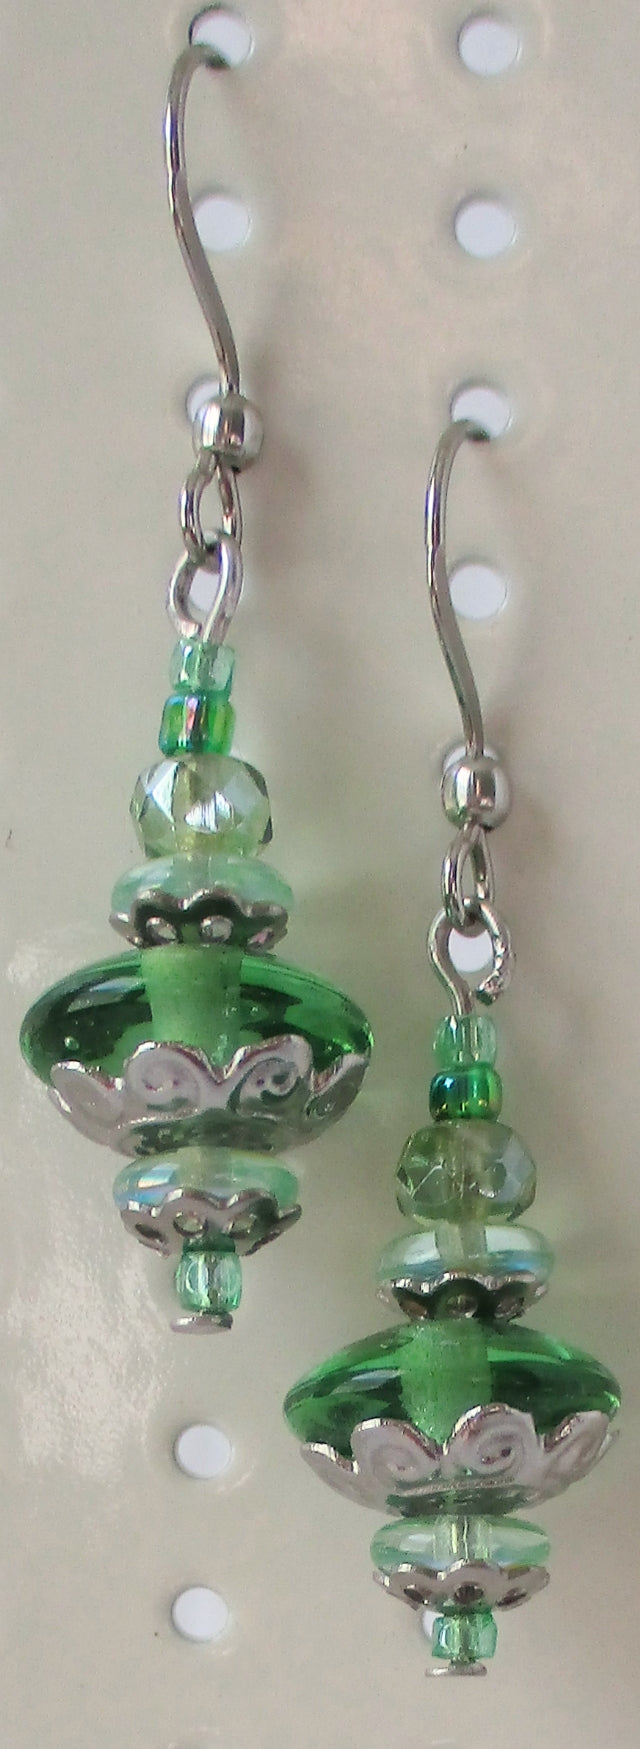 light green drop earrings juicybeads jewelry